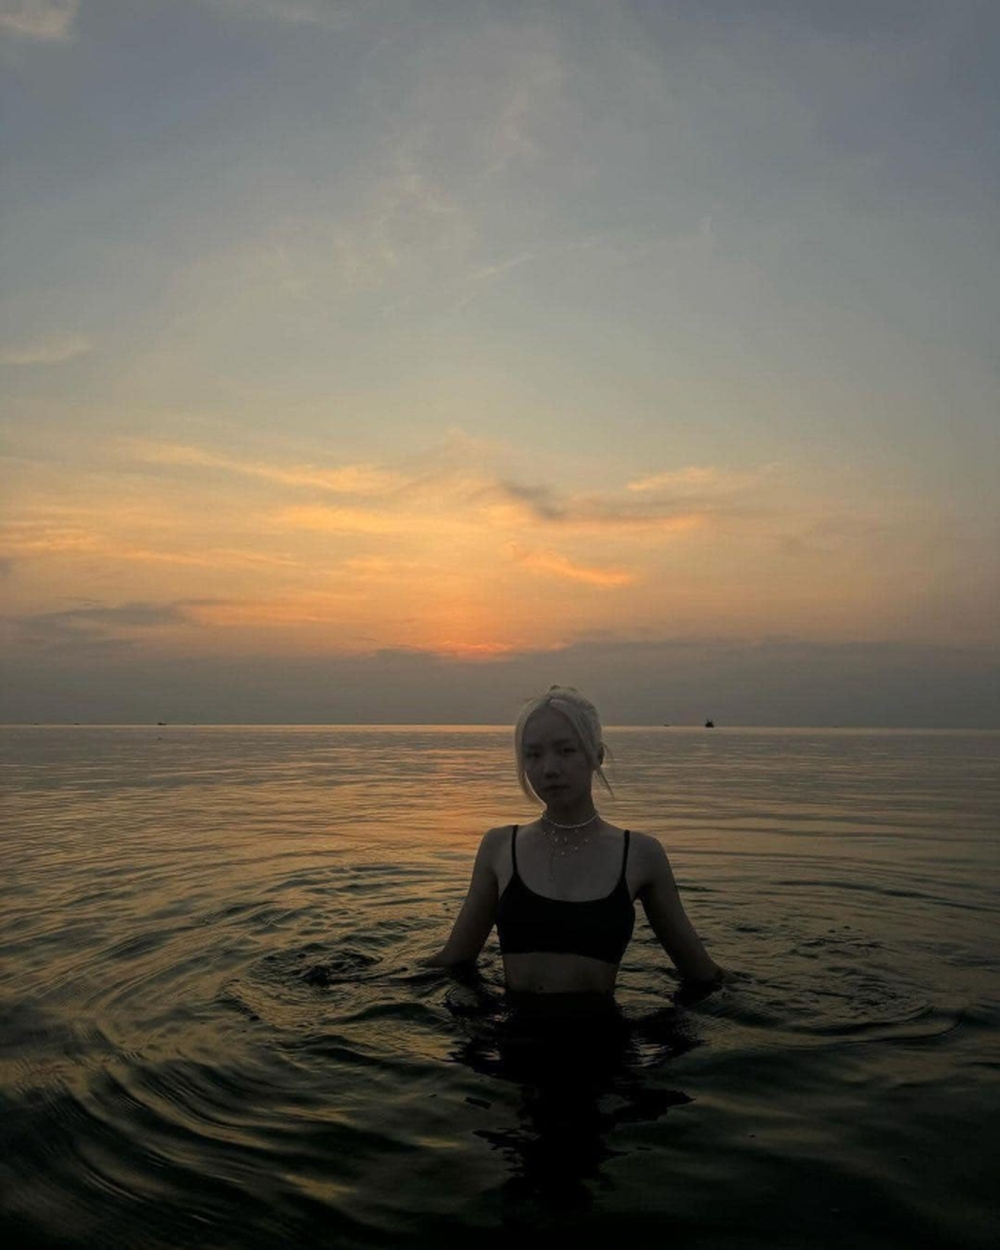 ĐỘC QUYỀN ảnh và clip: Tóm gọn Phương Ly - Andree hẹn hò, hôn nhau trên bãi biển Phú Quốc - Ảnh 8.